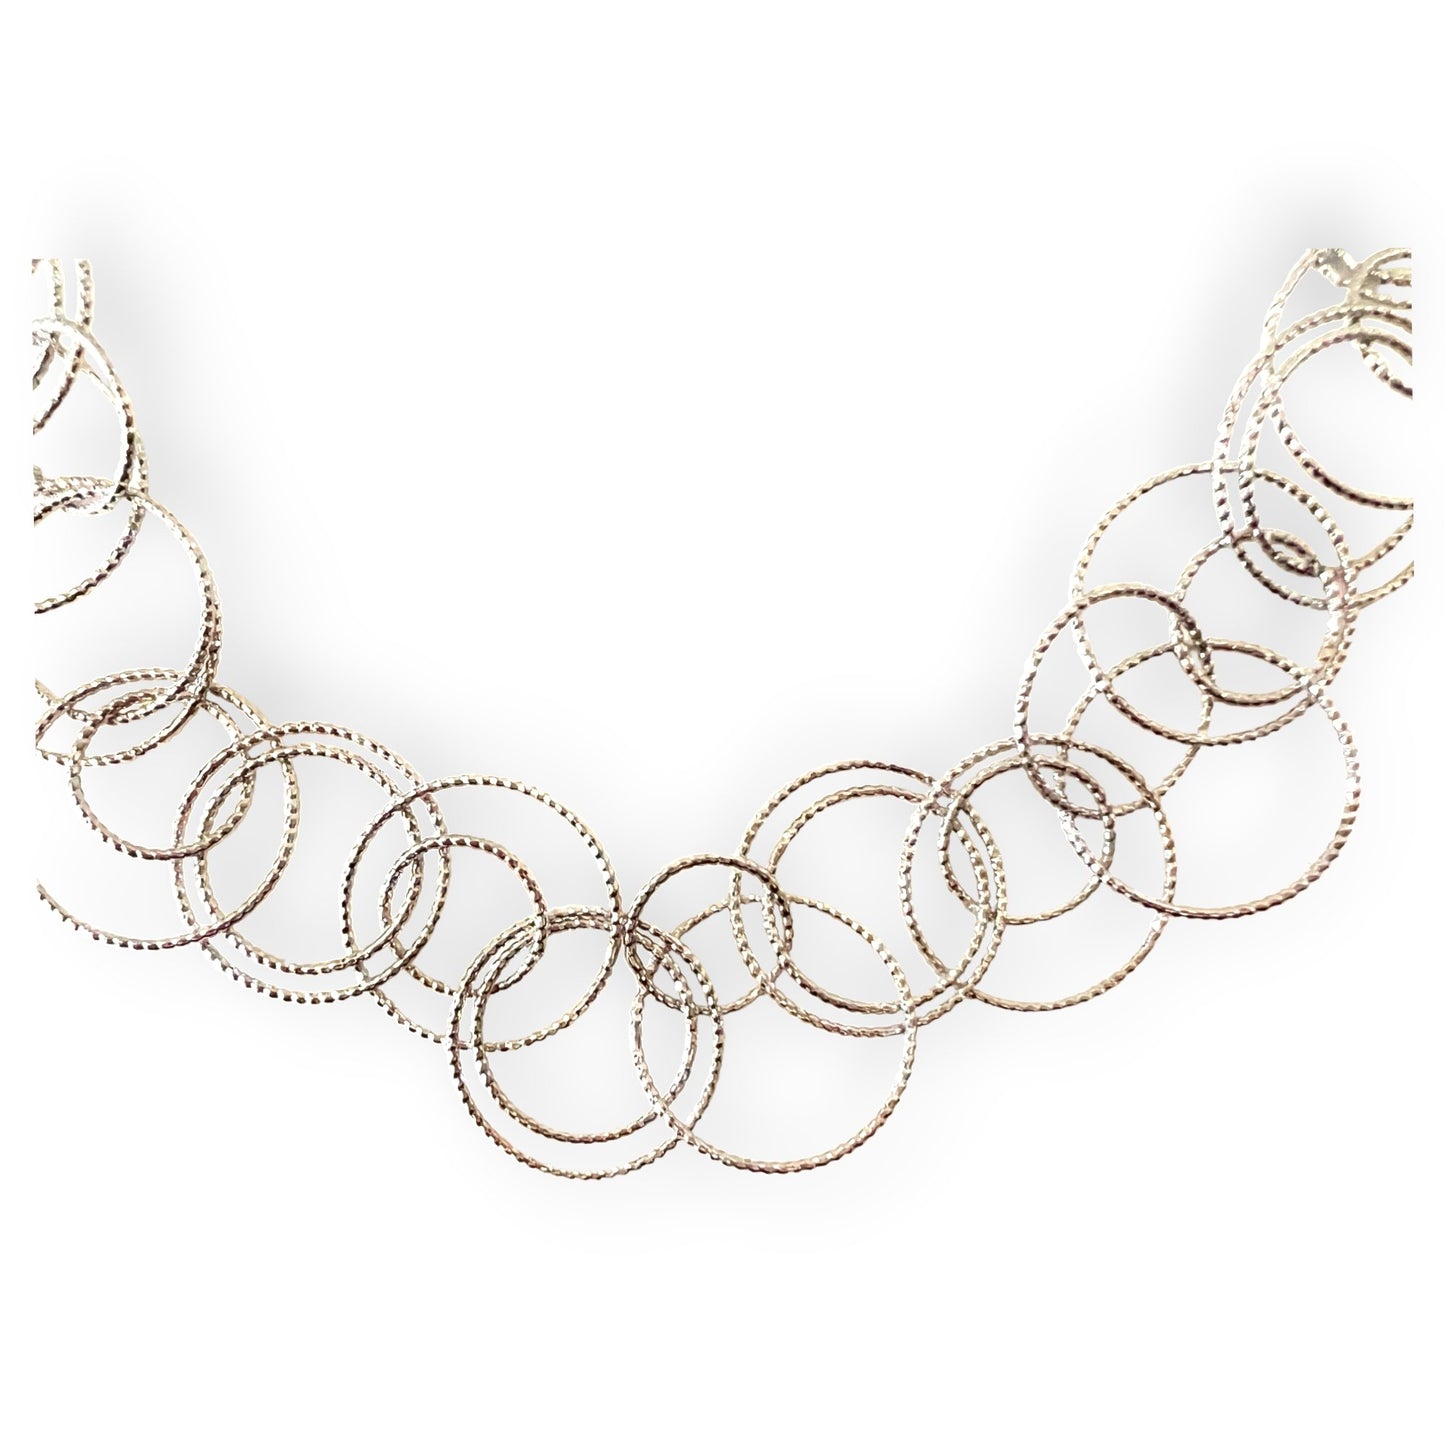 Shimmering interlocking rings necklace - Sundara Joon